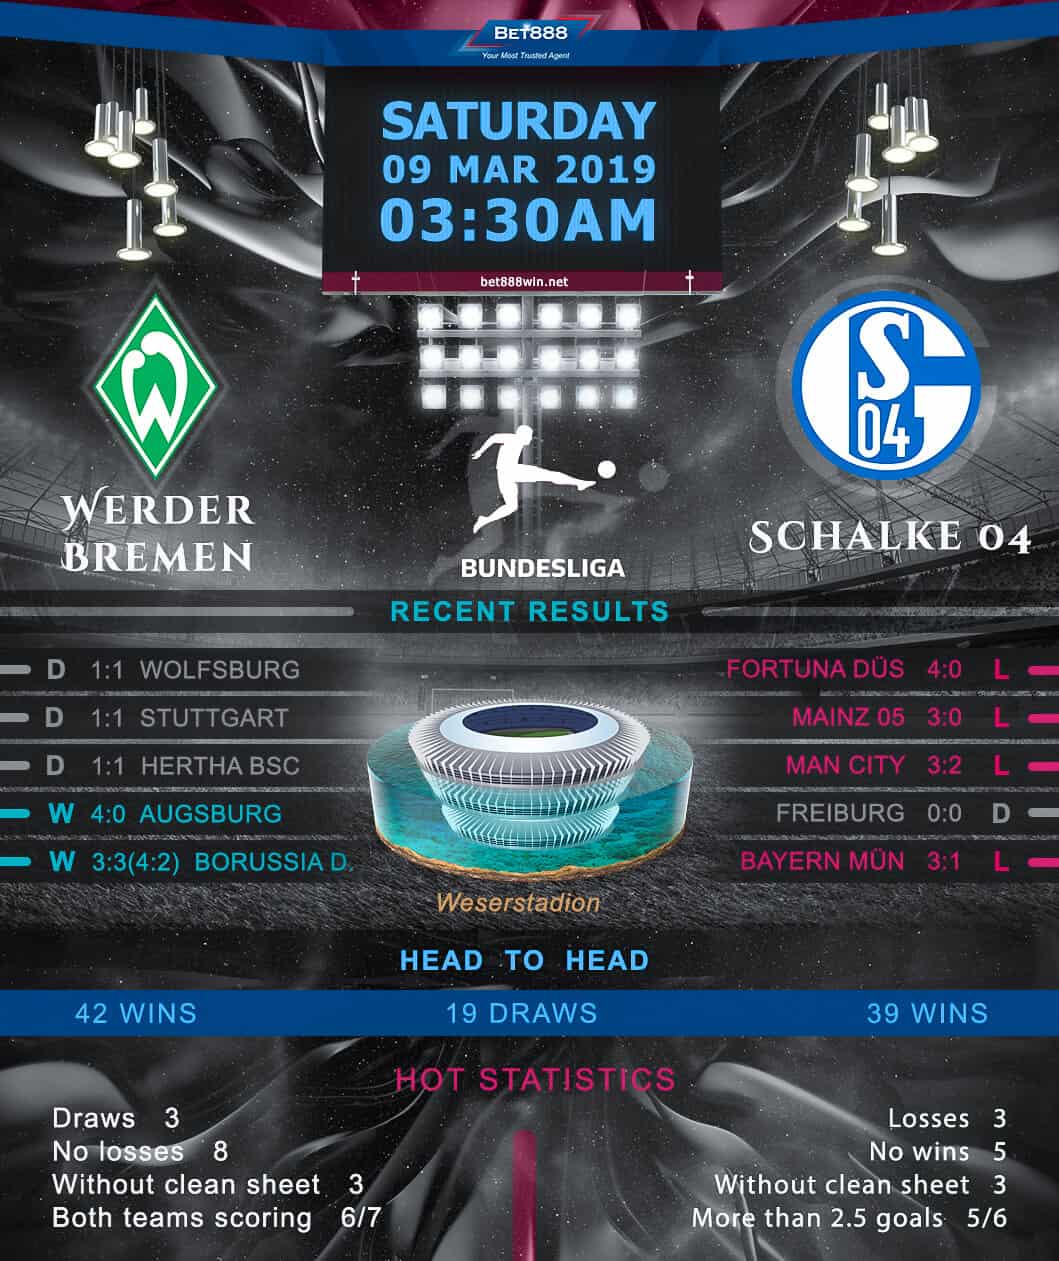 Werder Bremen vs Schalke 04 09/03/19